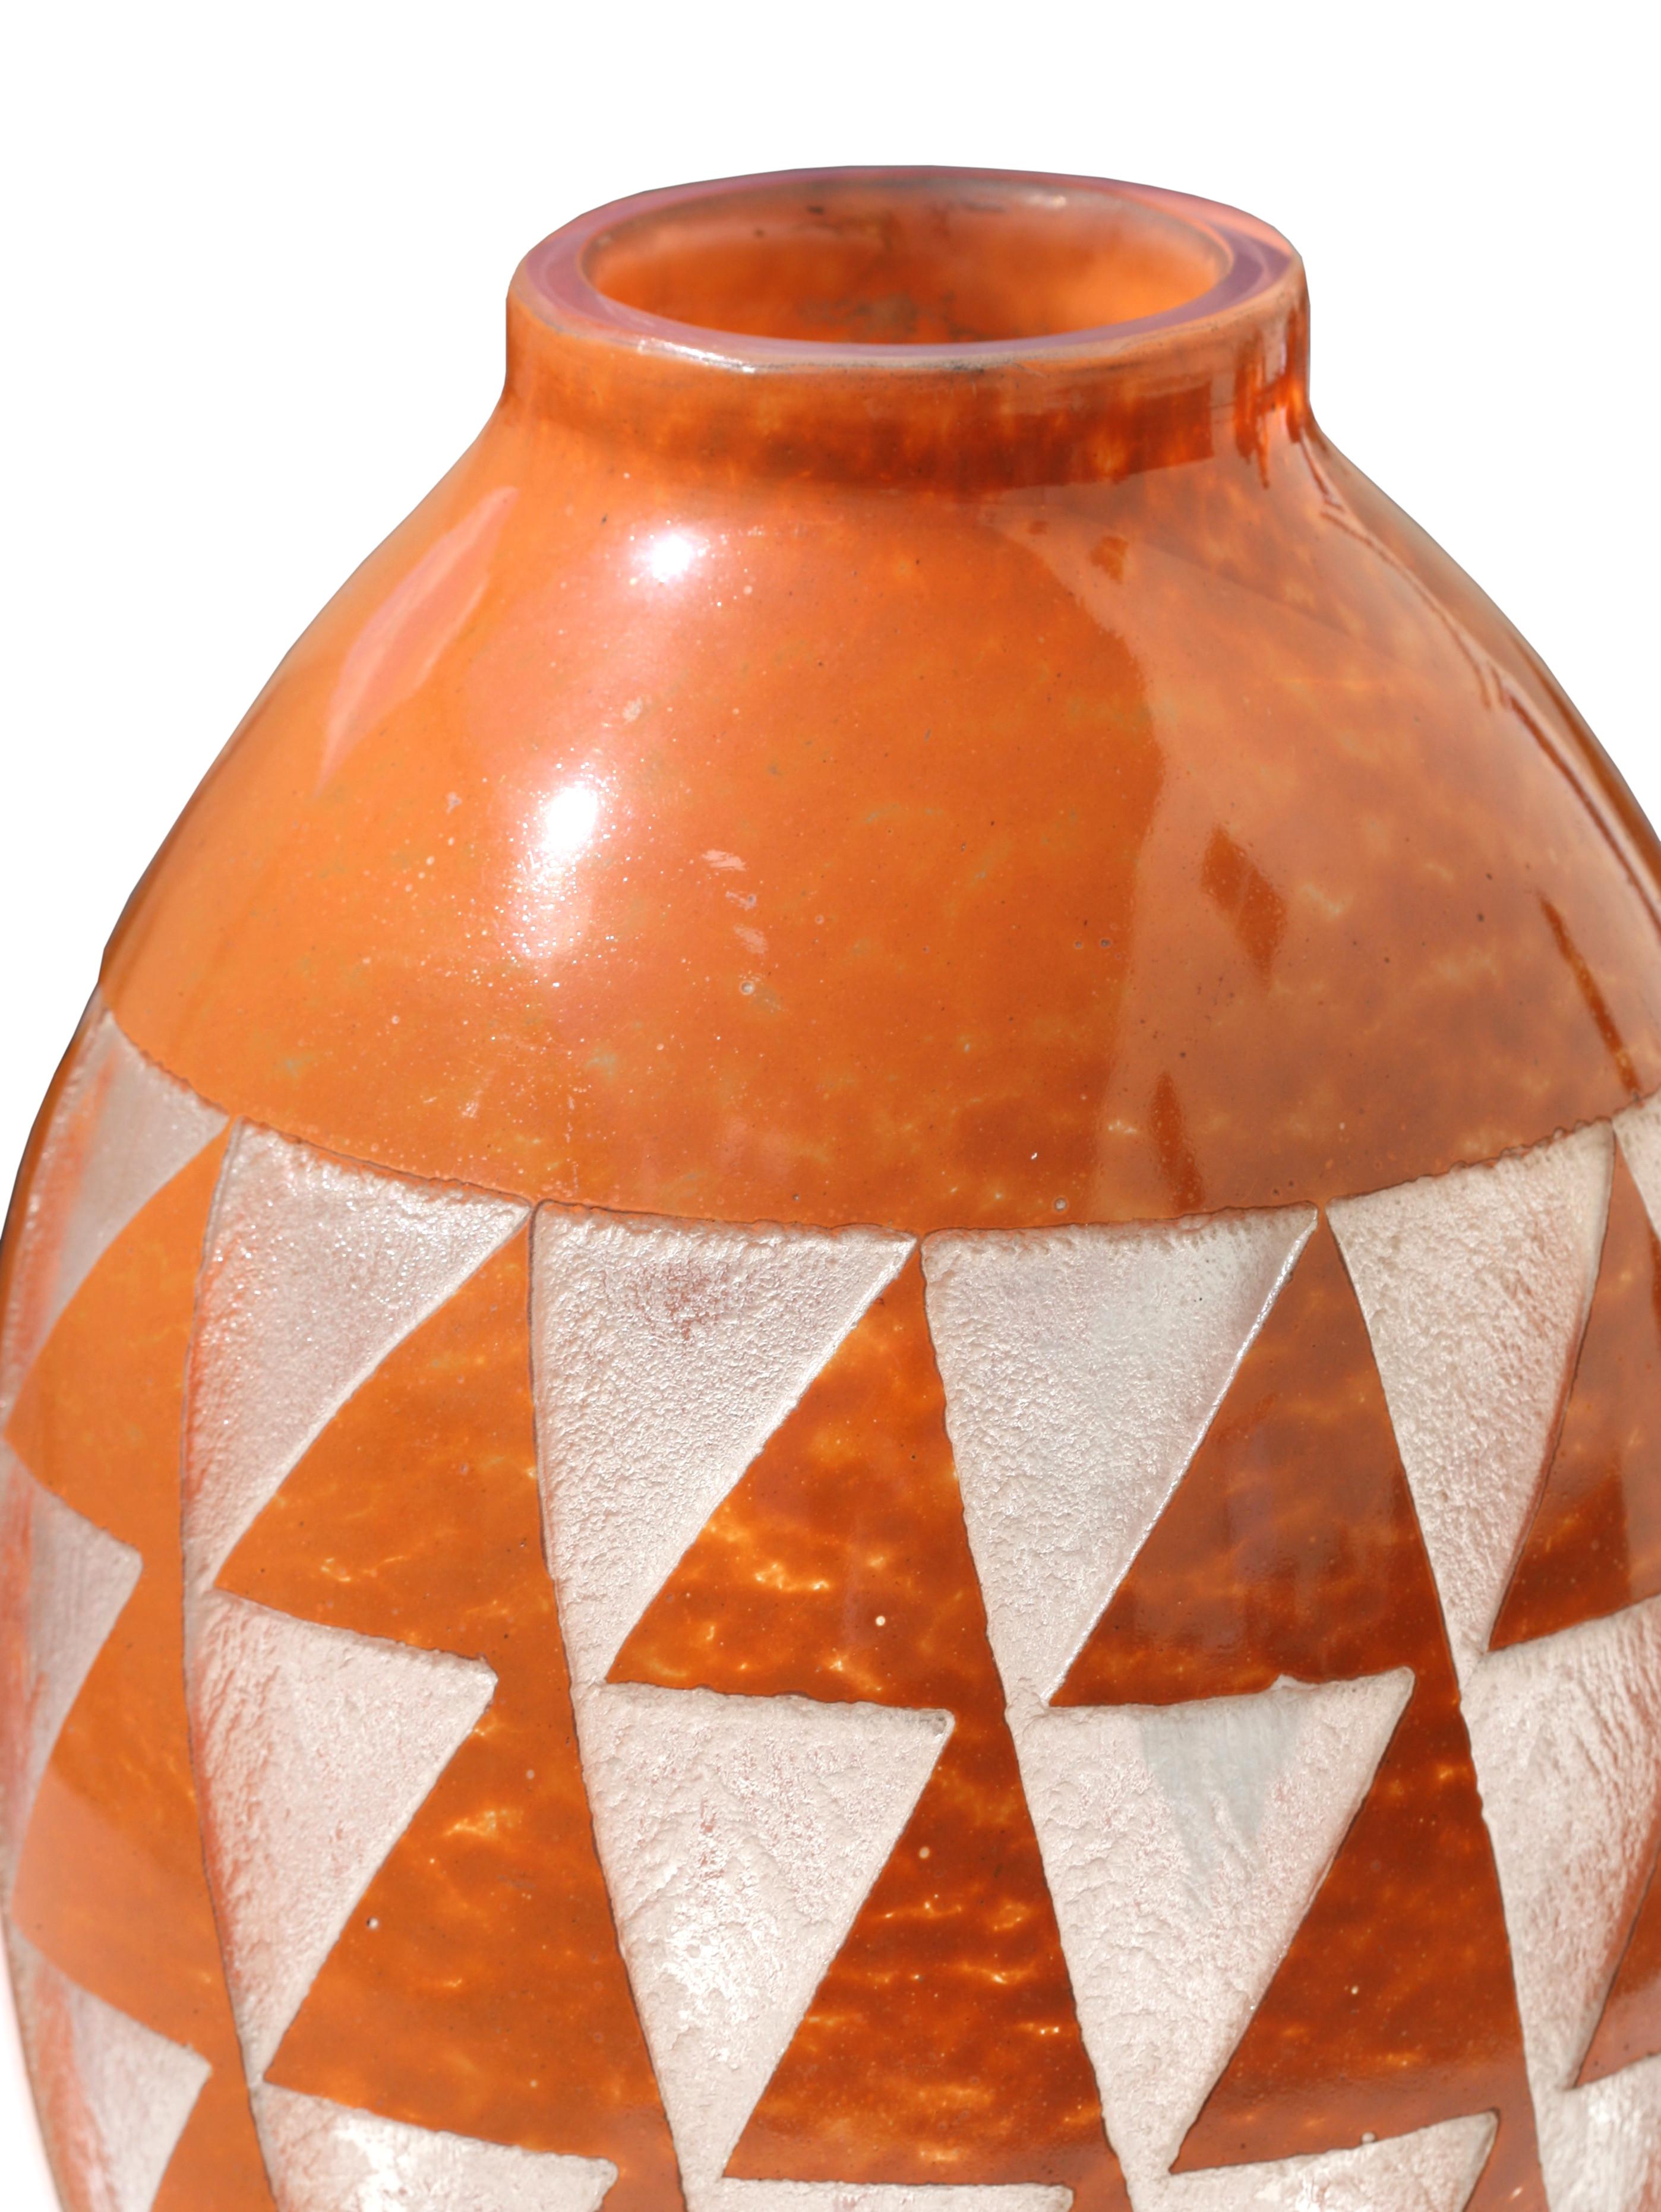 Un grand vase Degue en verre gravé à l'acide Art Déco, en verre de couleur orange de forme ovoïde, l'extérieur gravé de triangles stylisés sur une base circulaire, signé sur le bord, Degue.
Mesures : Hauteur : 41,9 cm (16,5 in.) 
Diamètre de 25,1